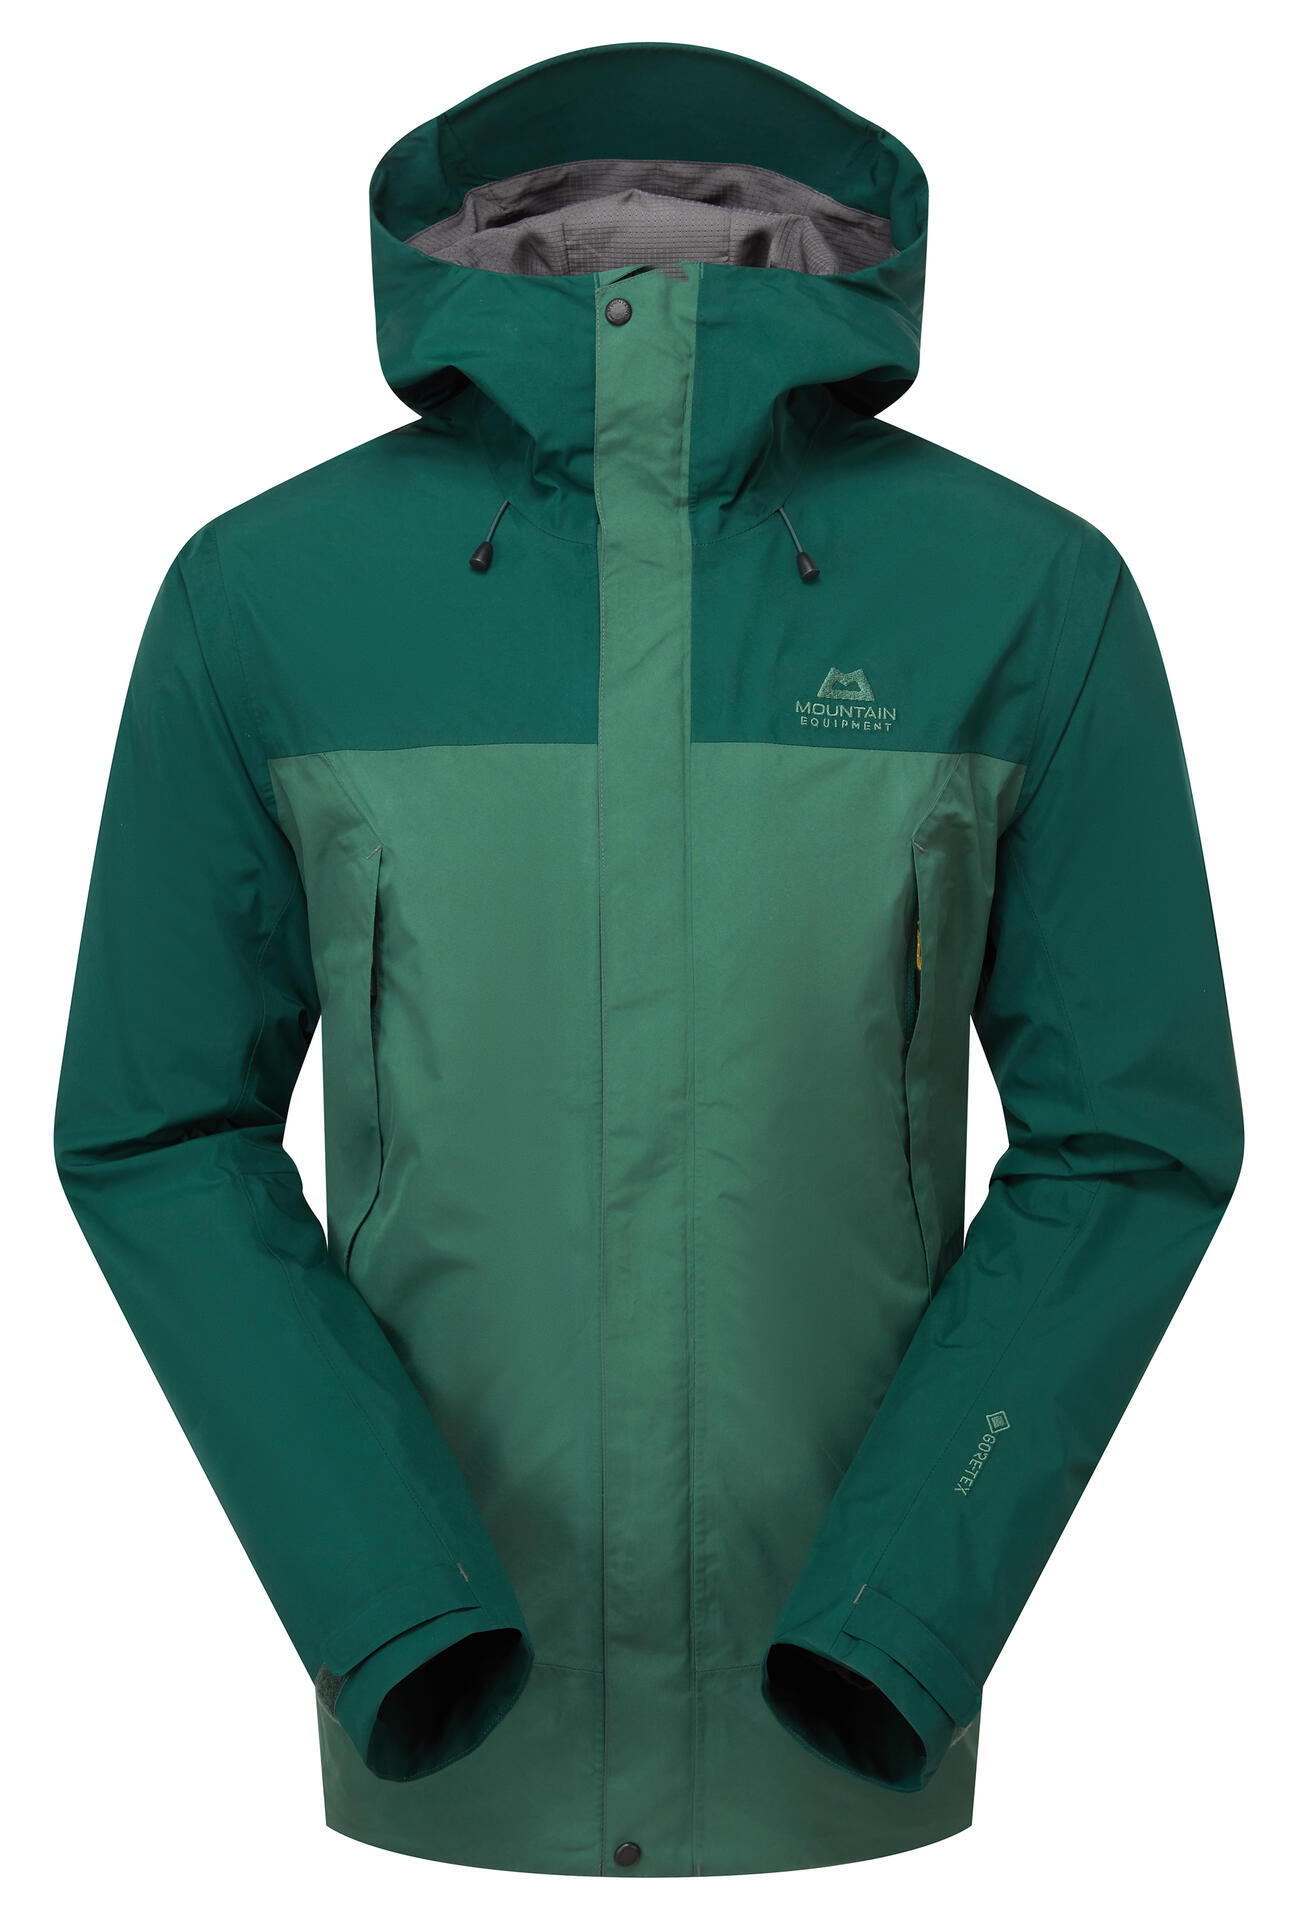 Mountain Equipment Nanda Devi Jacket Men'S Barva: Fern/Pine, Velikost: M